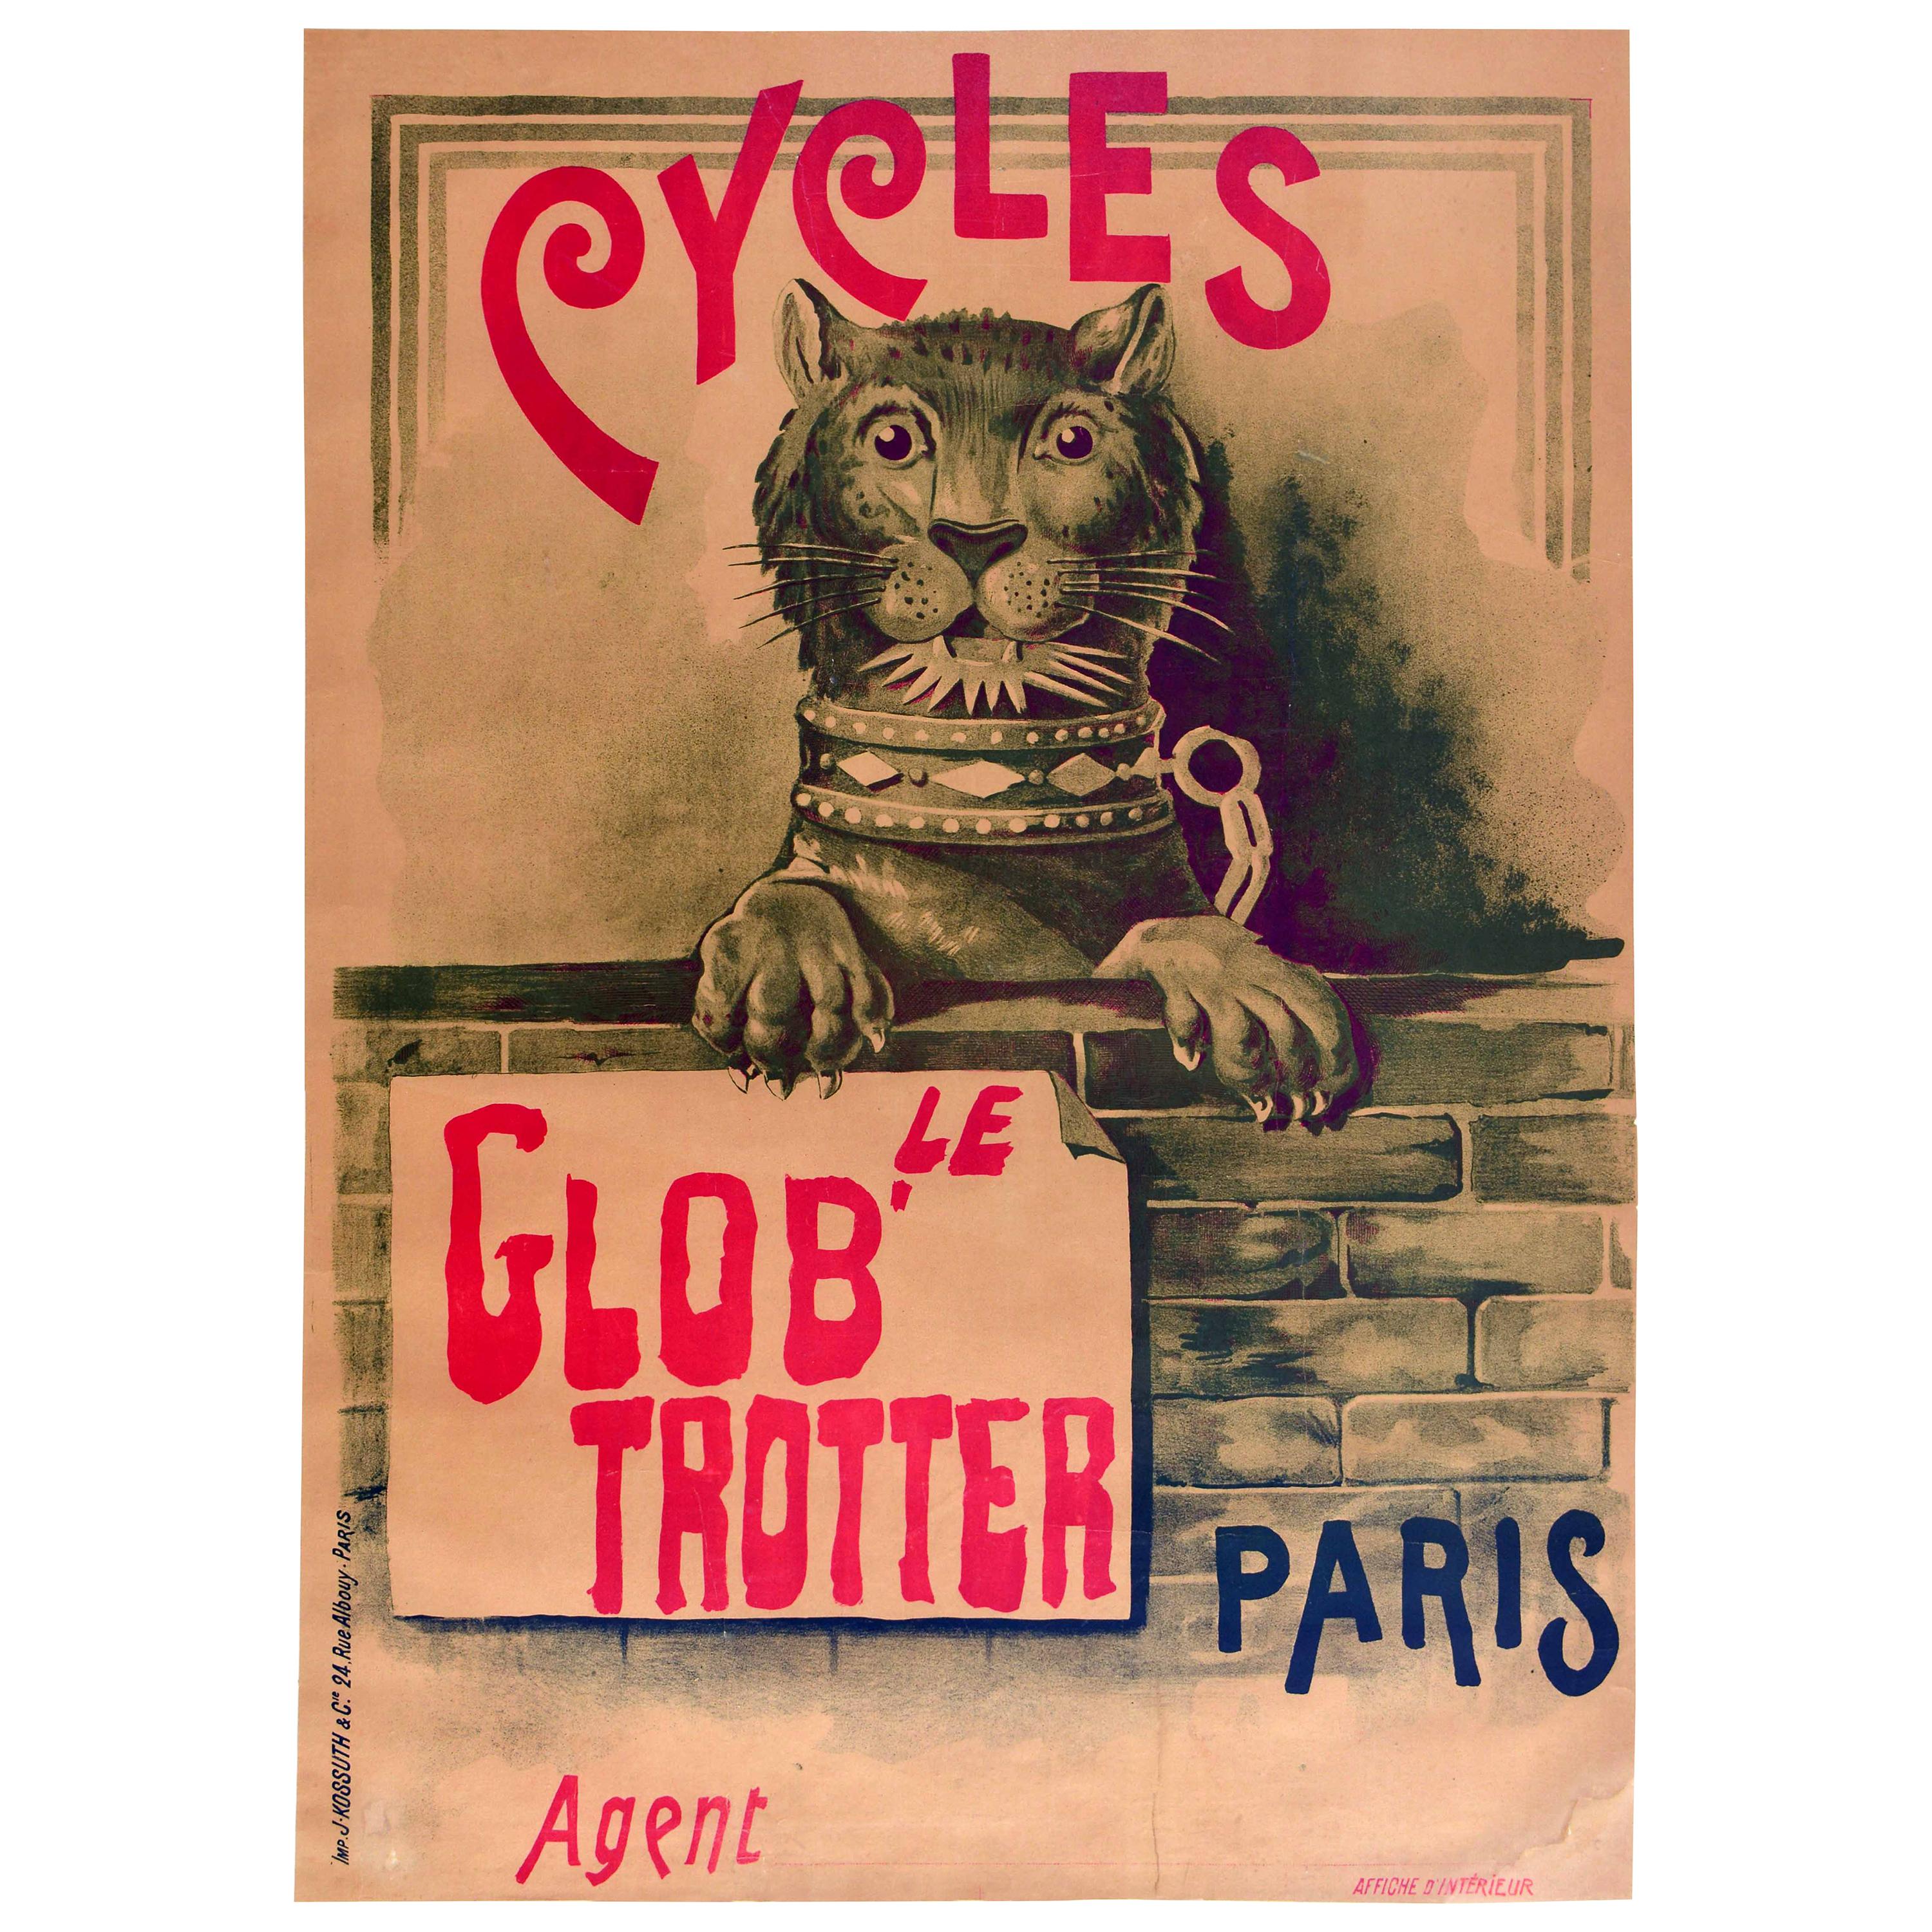 Affiche vintage d'origine Le Glob' Trotter Cycles, Paris, vélo design lion